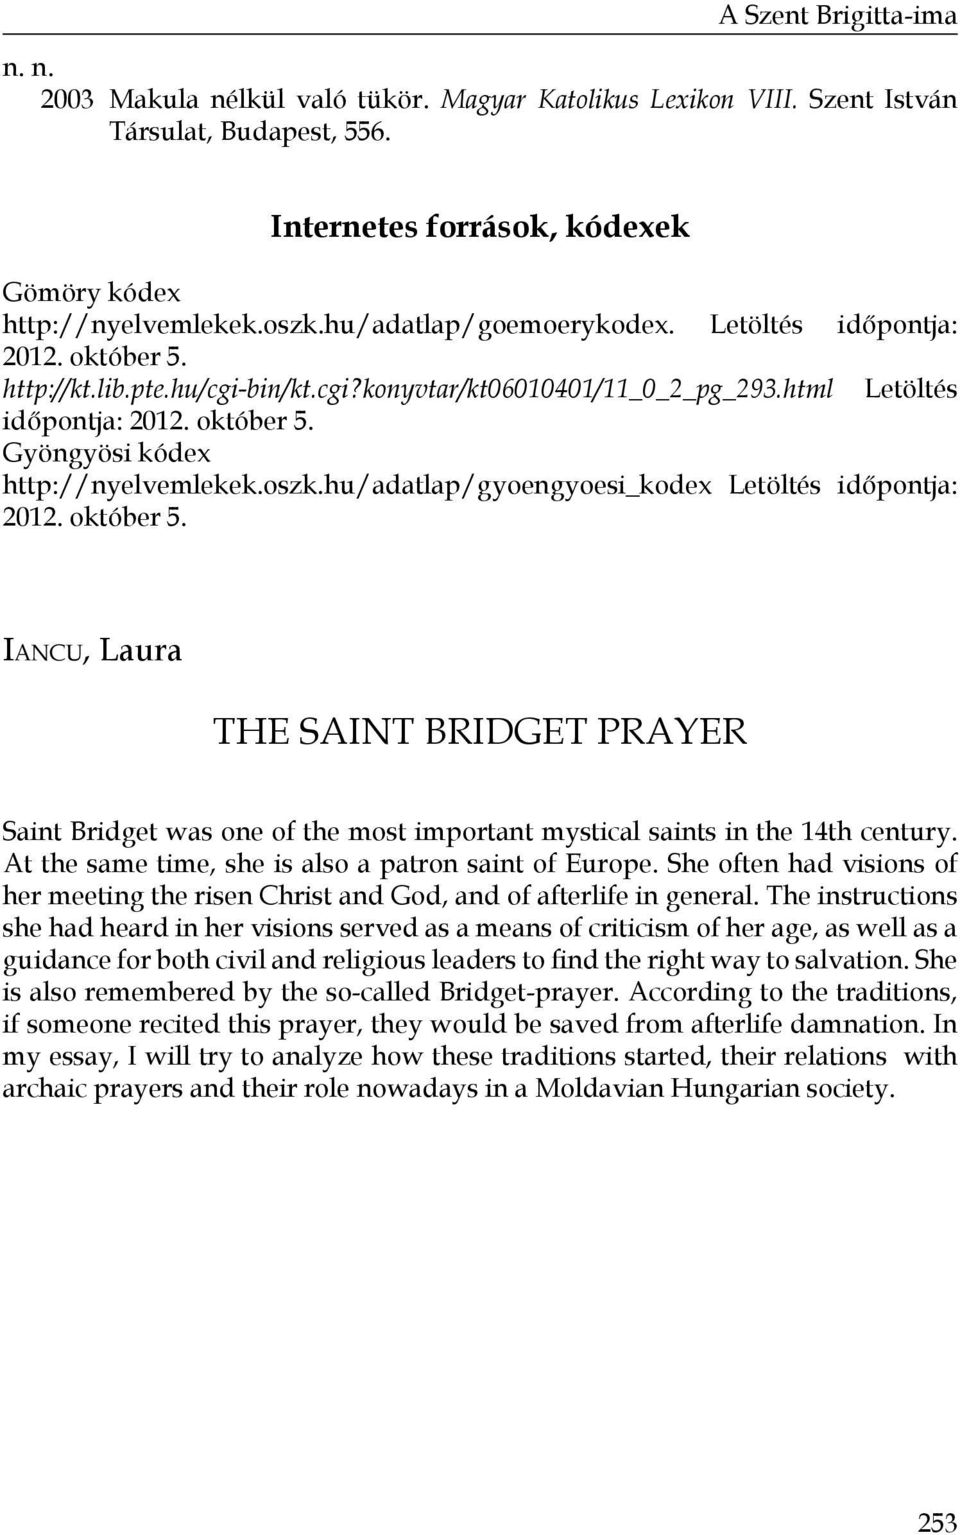 oszk.hu/adatlap/gyoengyoesi_kodex Letöltés időpontja: 2012. október 5. Iancu, Laura THE SAINT BRIDGET PRAYER Saint Bridget was one of the most important mystical saints in the 14th century.